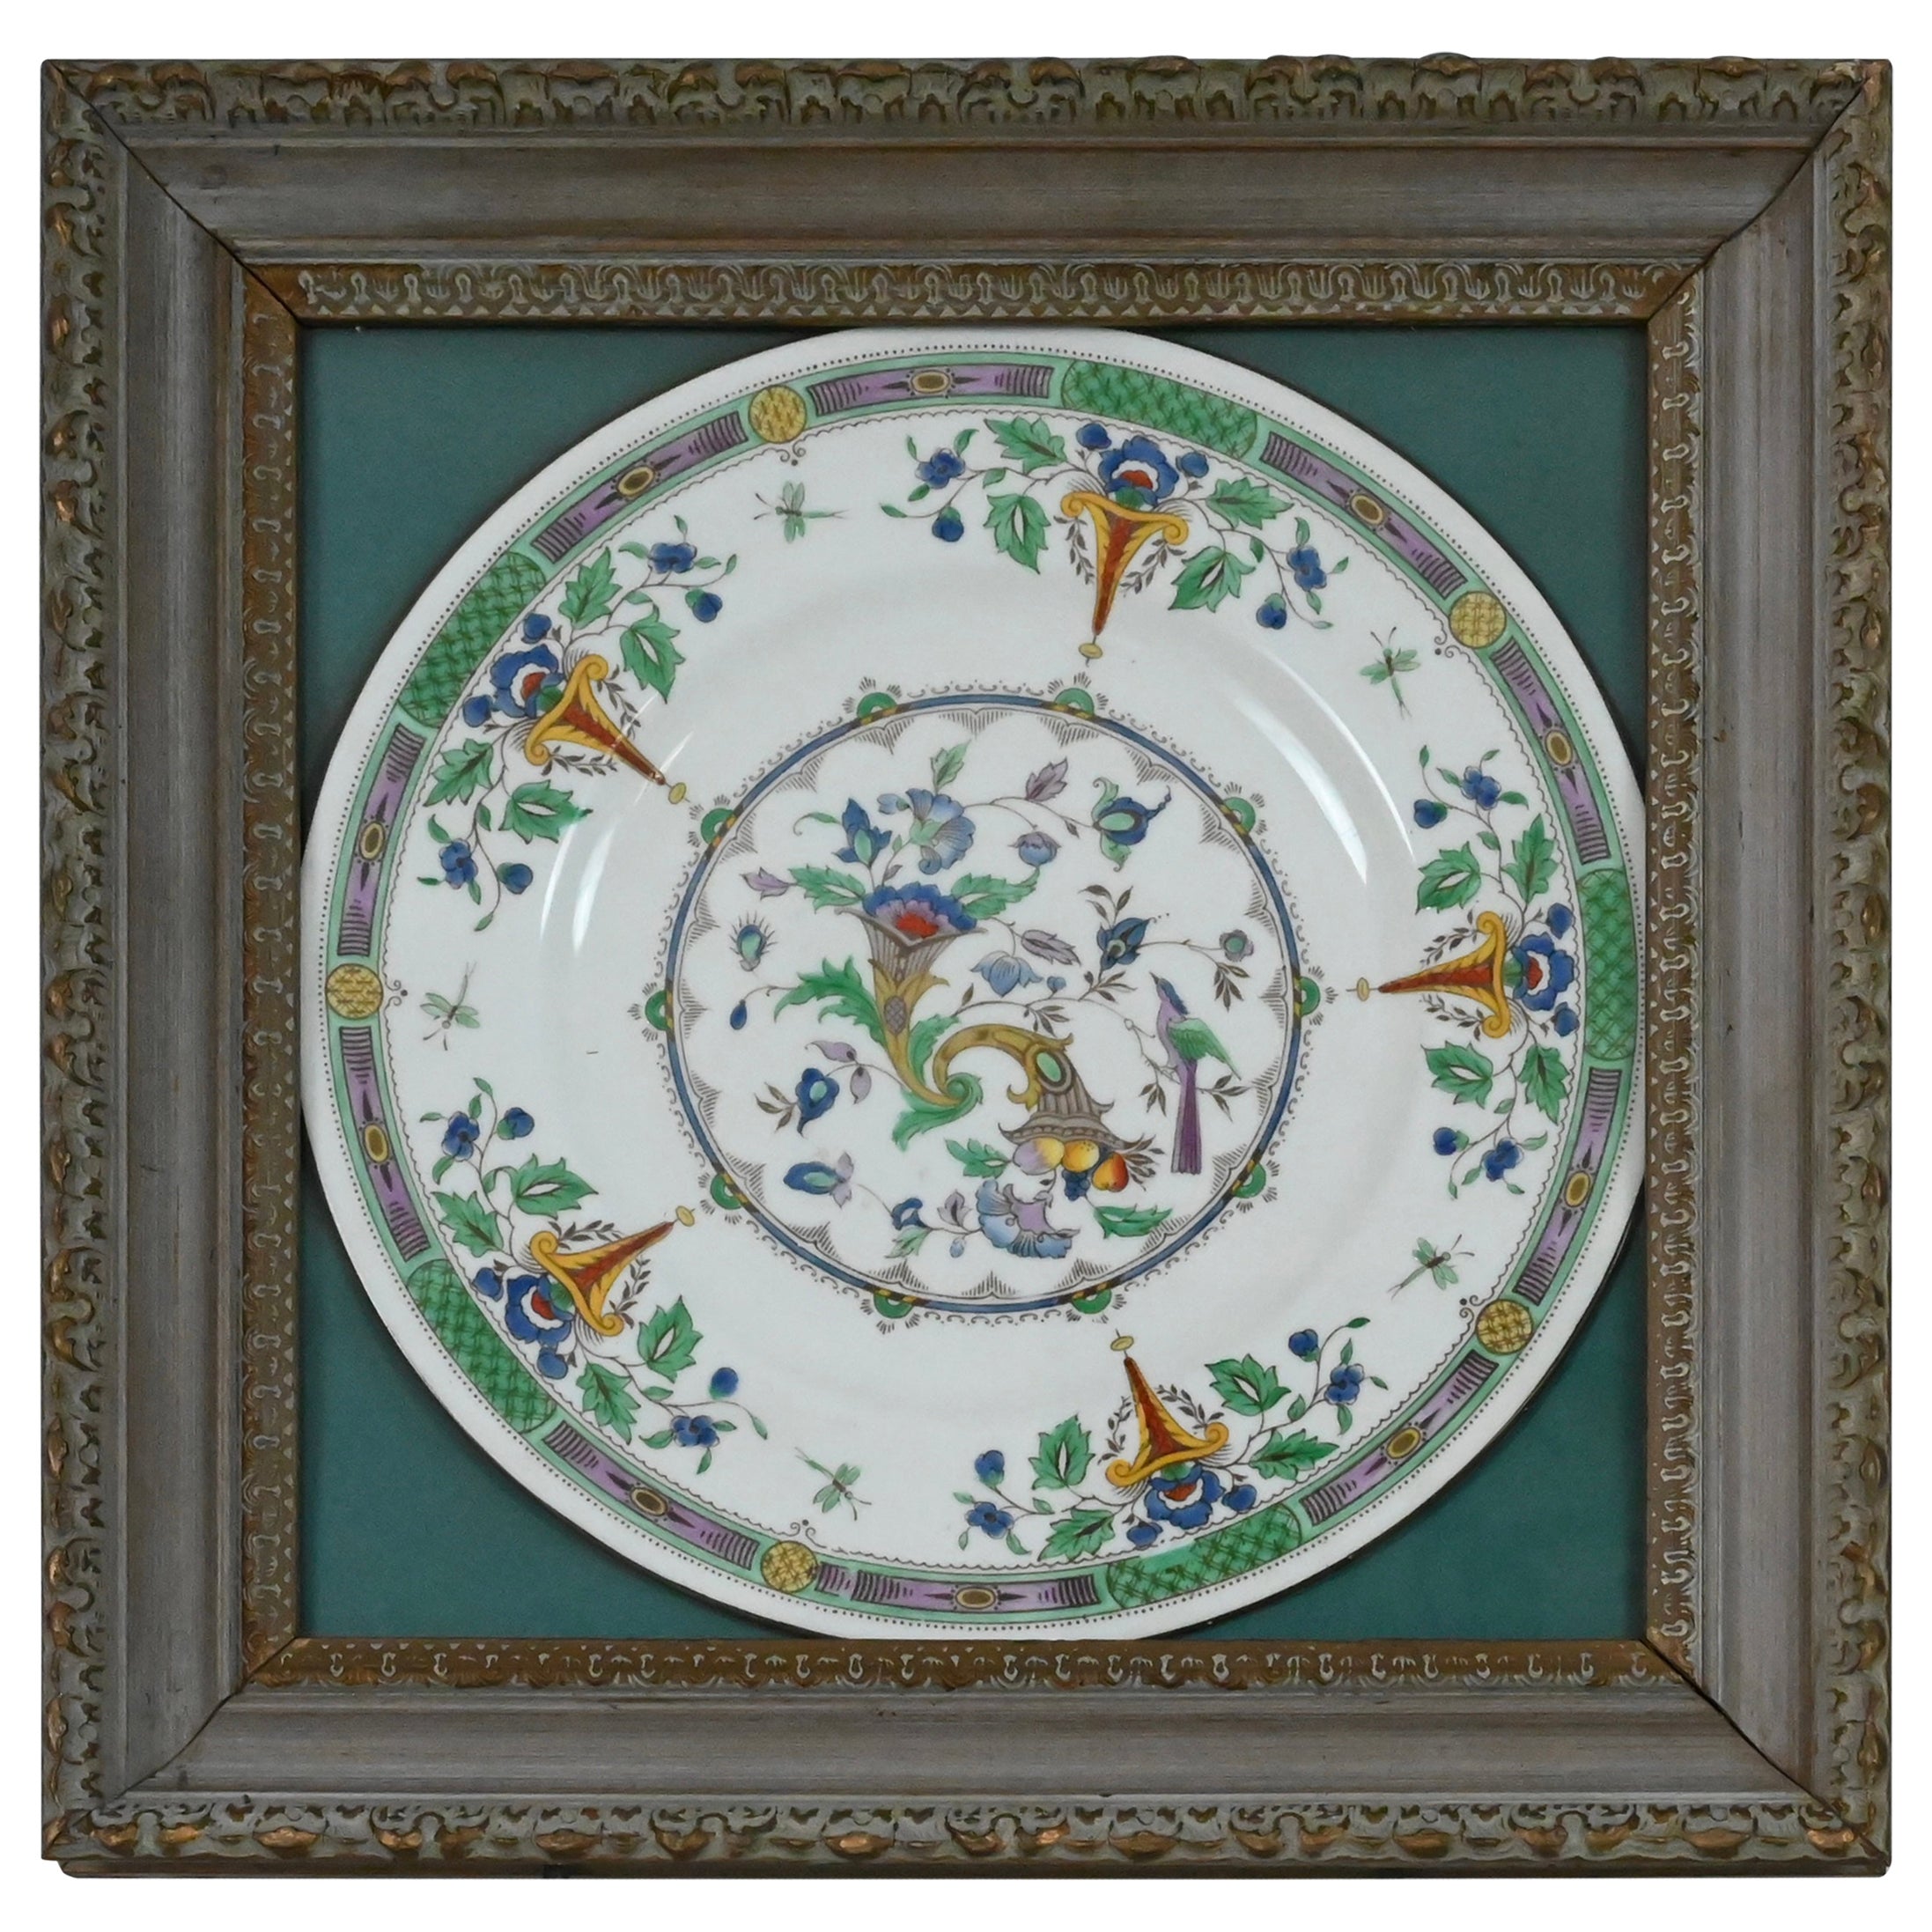 Framed Wedgwood Porcelain Charger or Decorative Dish